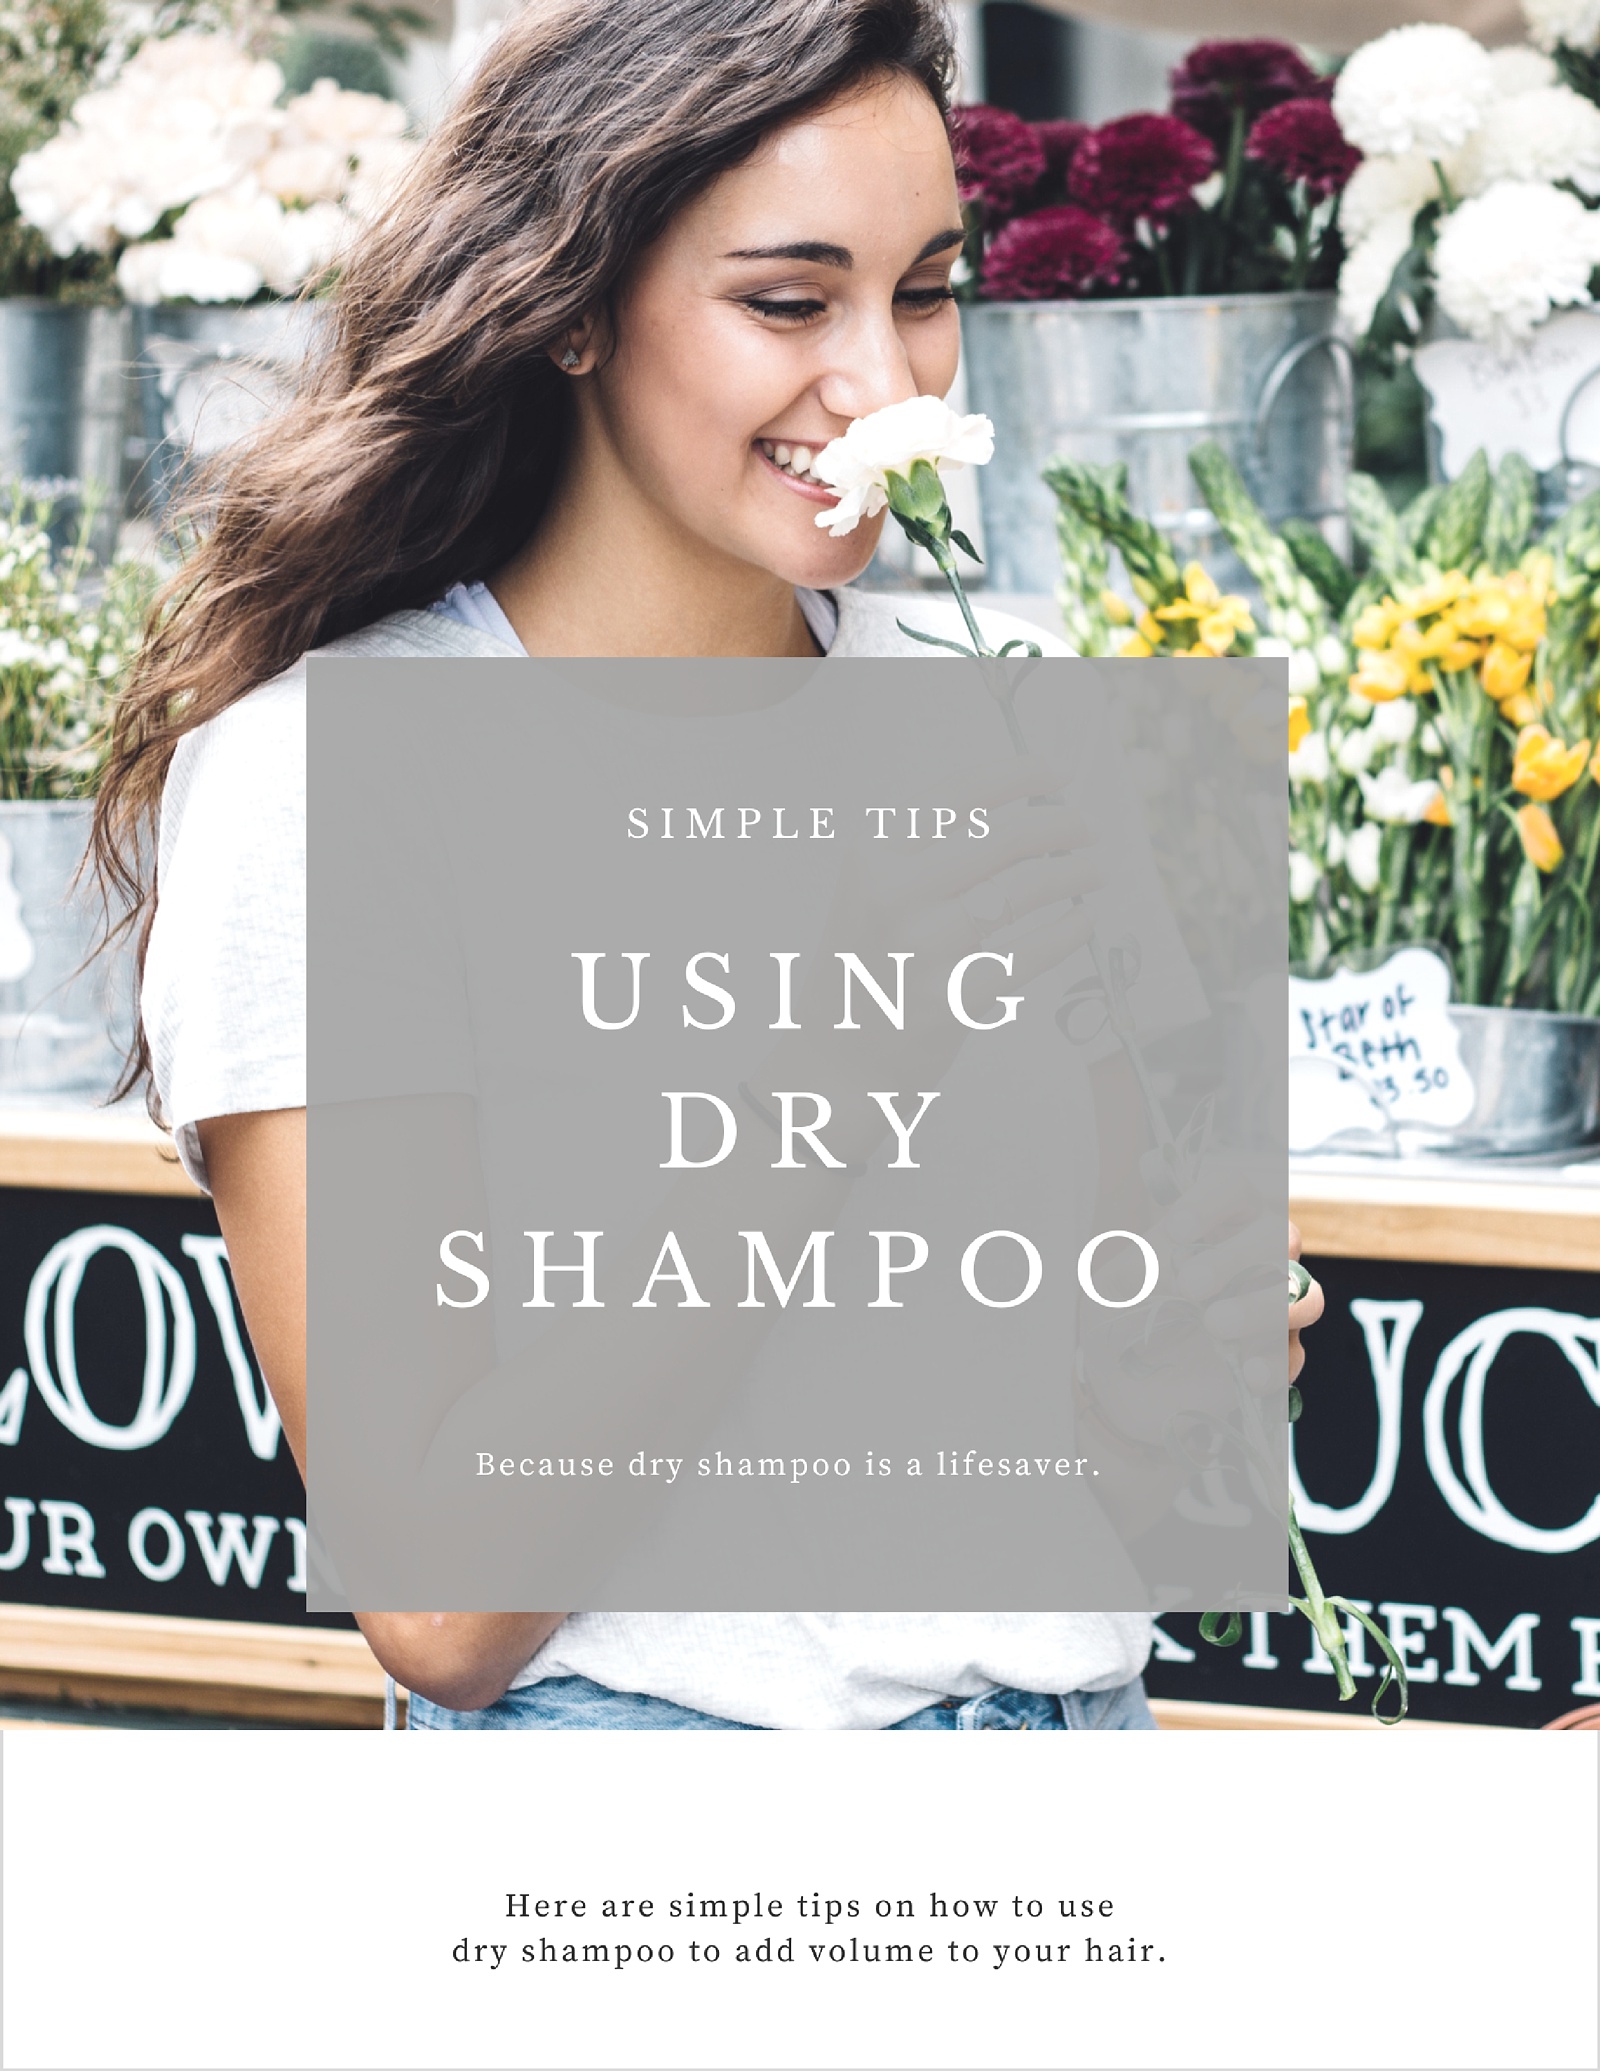 5 sposoby użycia suchego szamponu, aby dodać włosom objętości